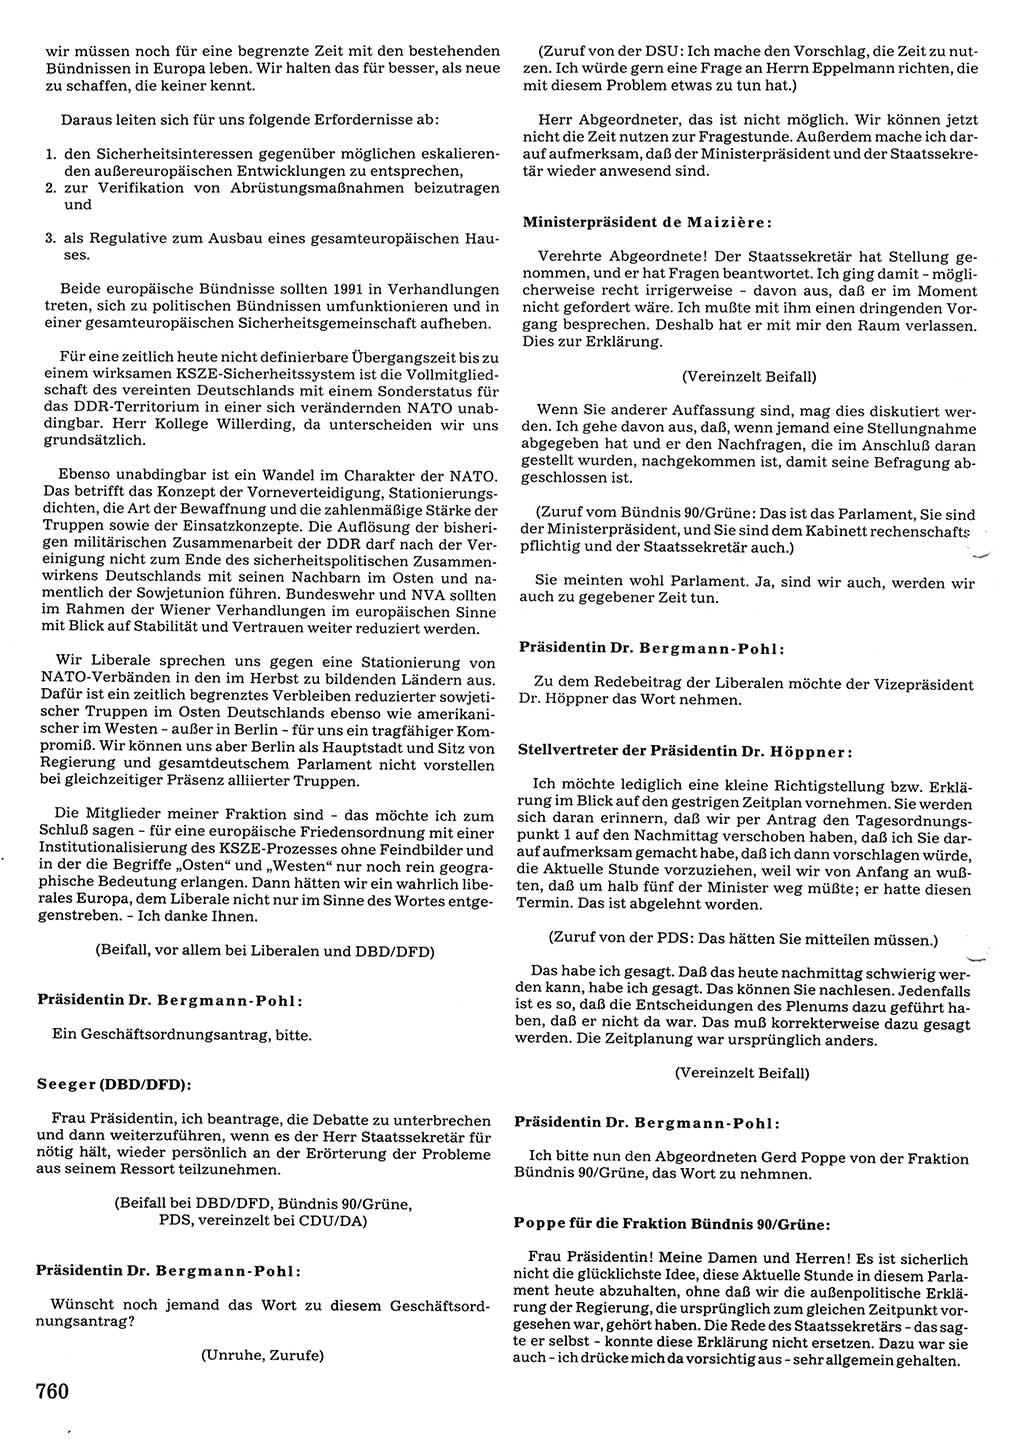 Tagungen der Volkskammer (VK) der Deutschen Demokratischen Republik (DDR), 10. Wahlperiode 1990, Seite 760 (VK. DDR 10. WP. 1990, Prot. Tg. 1-38, 5.4.-2.10.1990, S. 760)